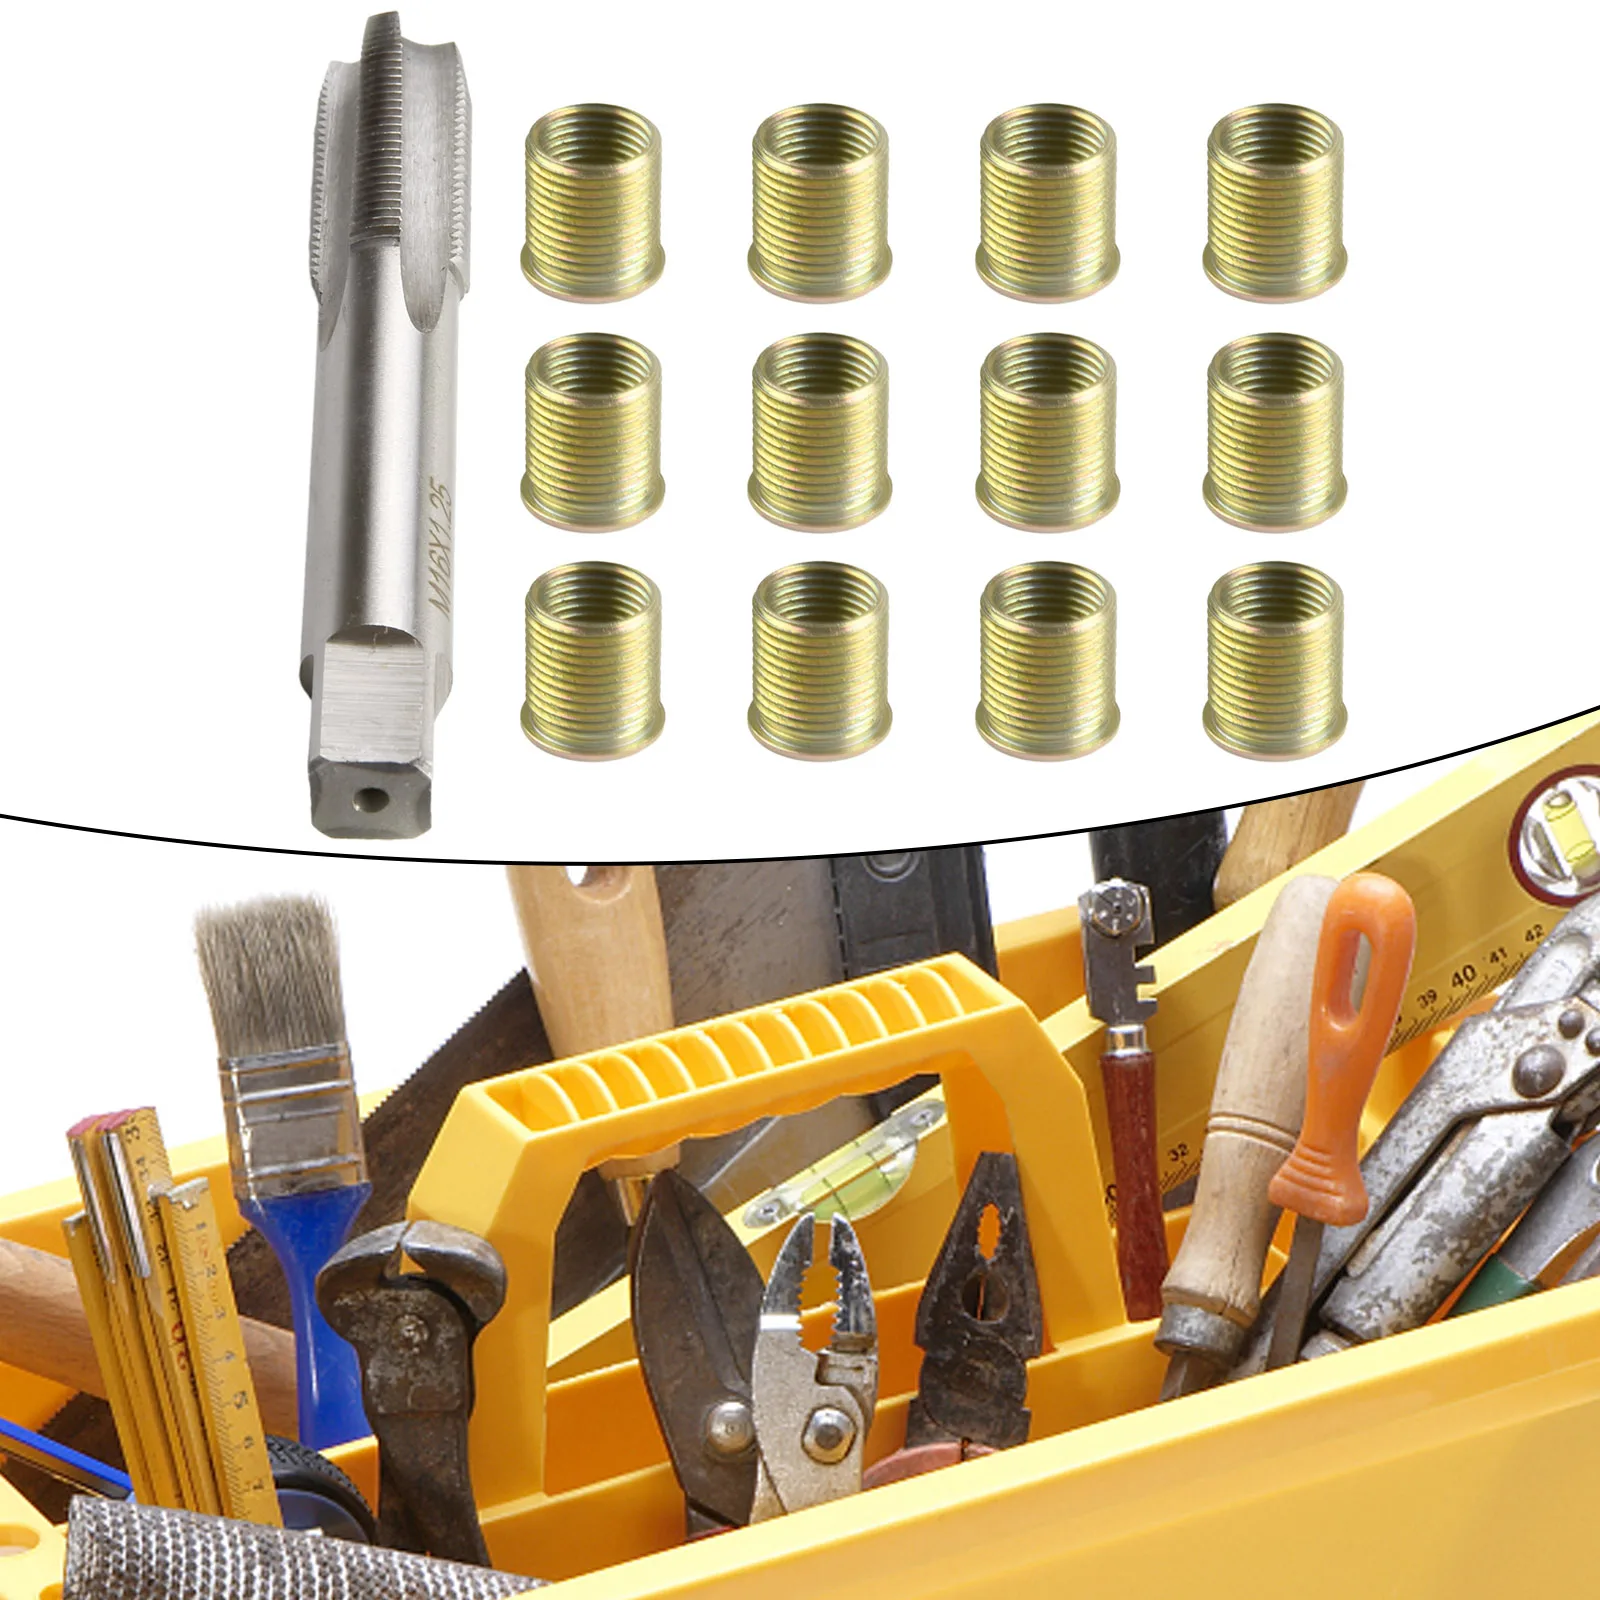 

Инструменты для ремонта резьбы, металлические вставки для бензинового двигателя M14 X 1,25 и набор для резьбы M16 X 1,25 для восстановления поврежденных резьб